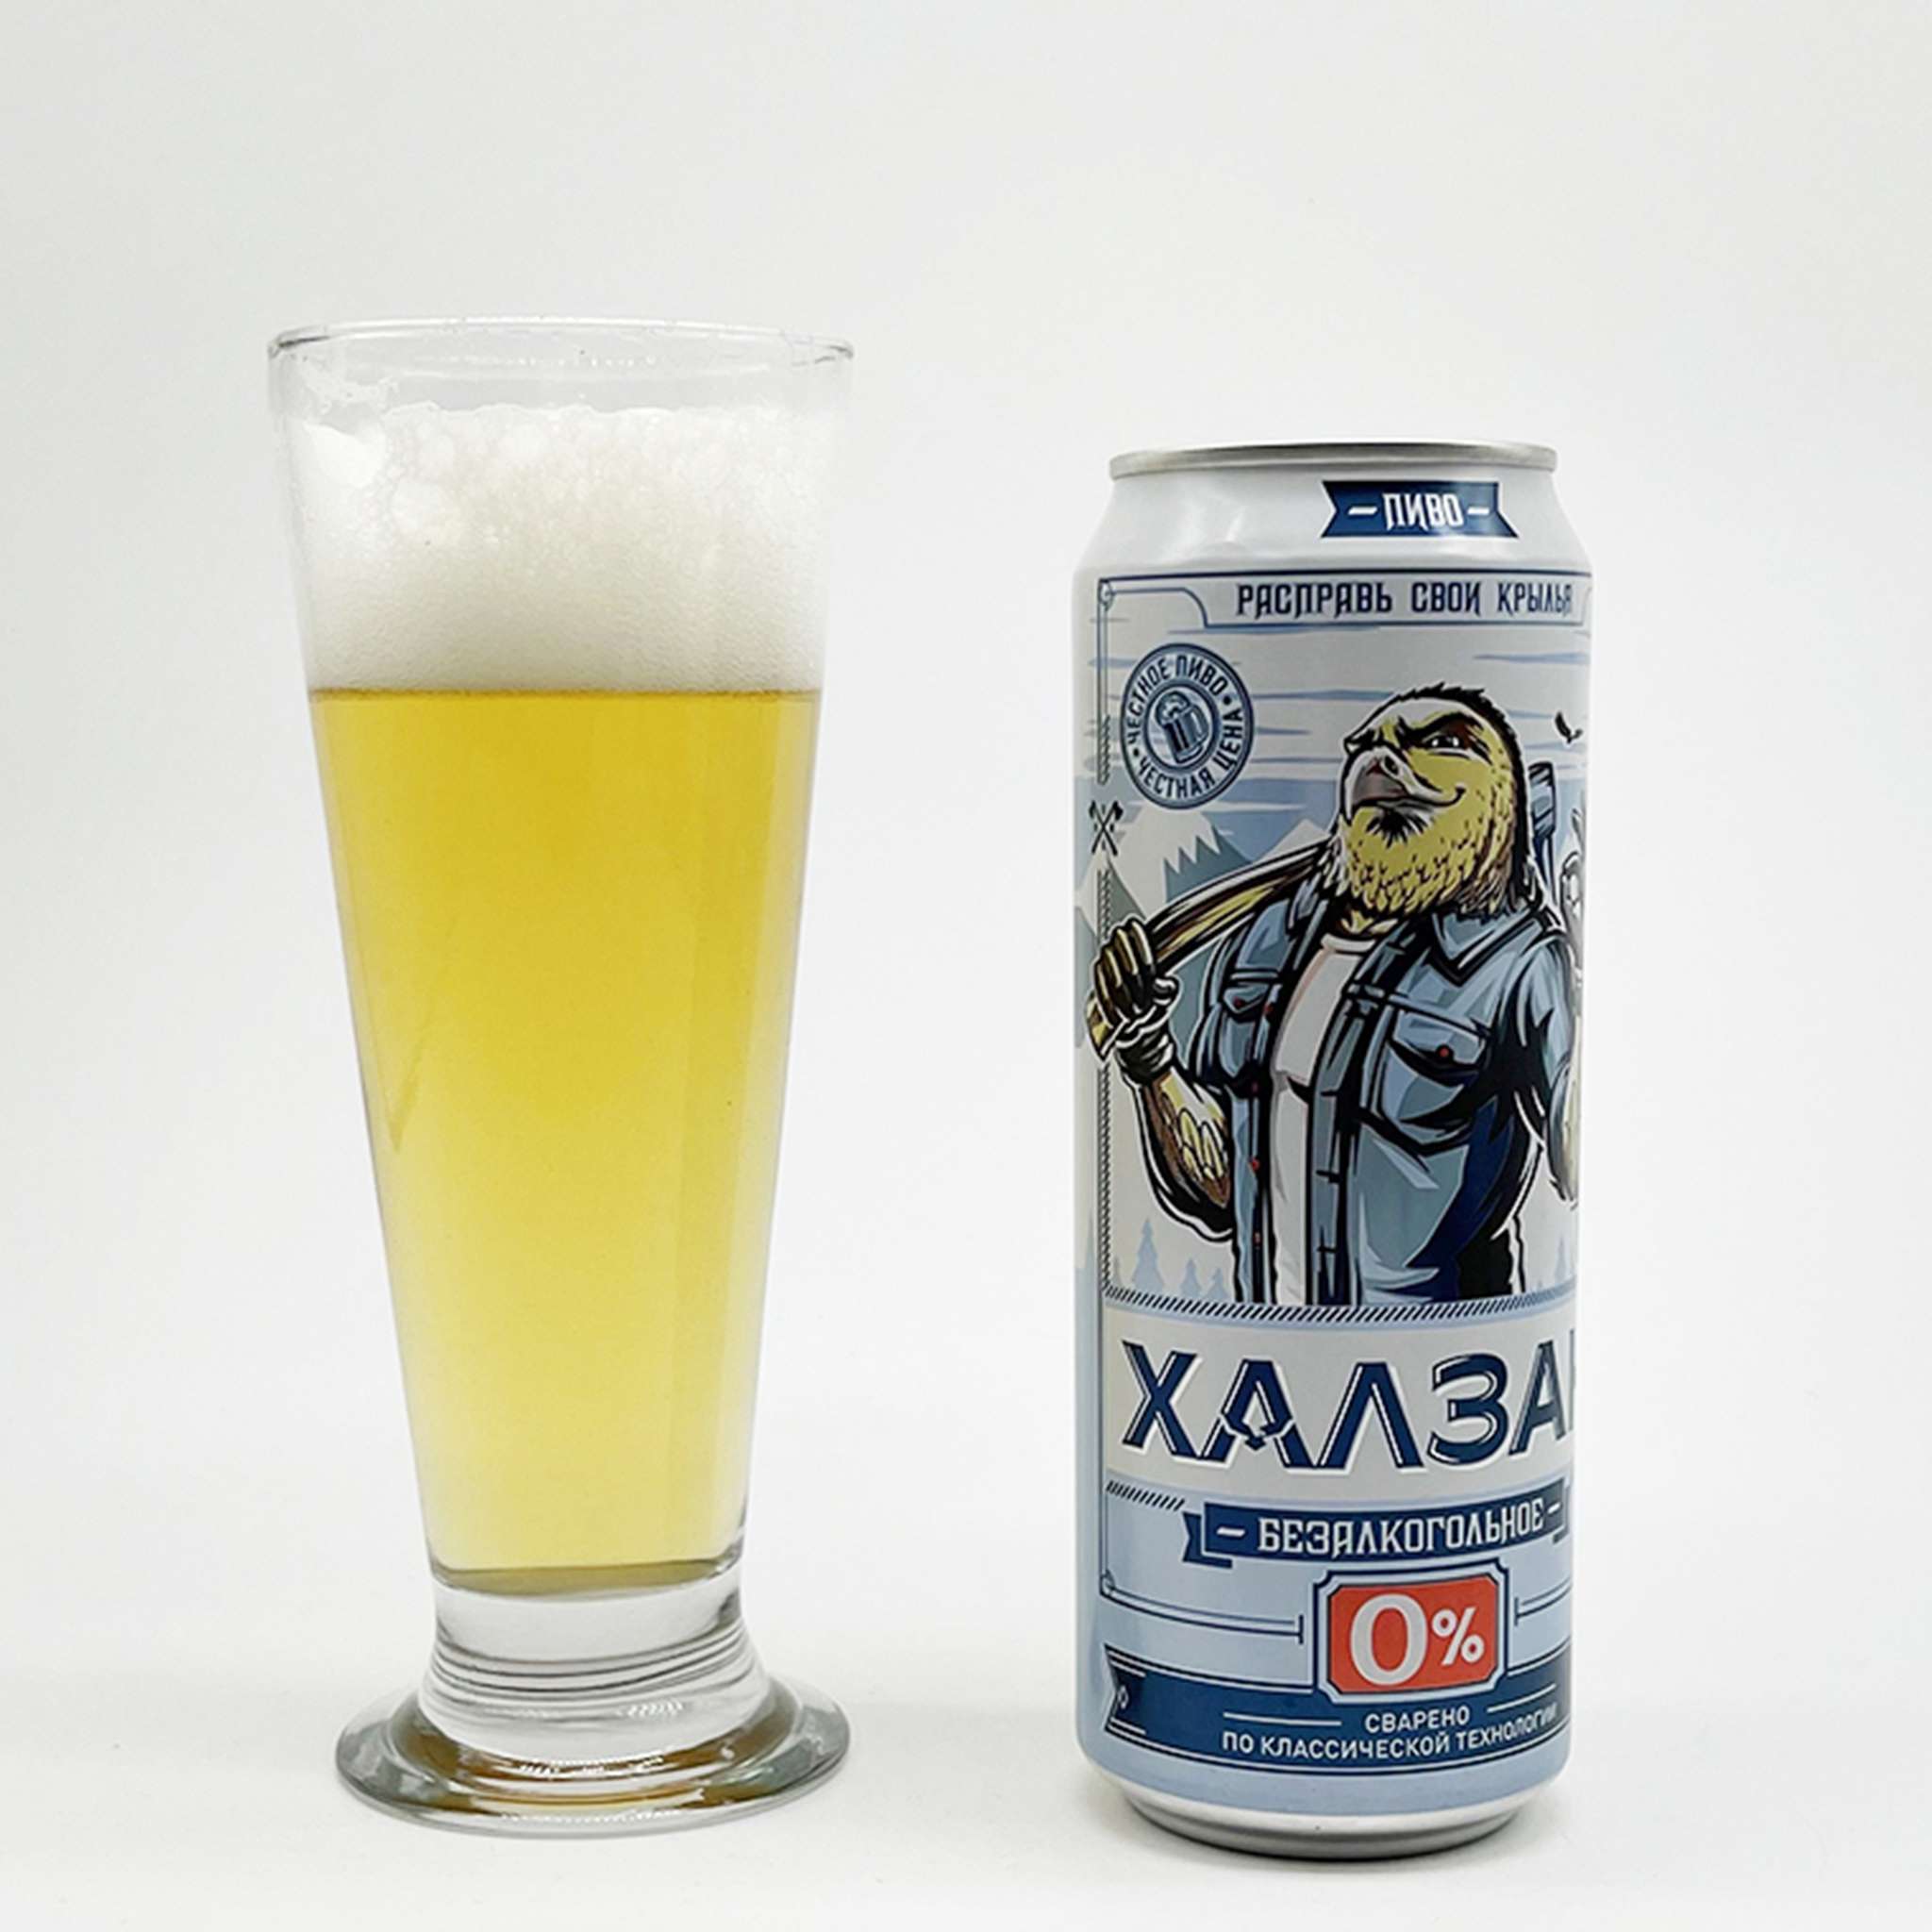 Bia Khazan 0% Nga - Thùng 12 Lon 450Ml - Đồ Uống Nhập Khẩu